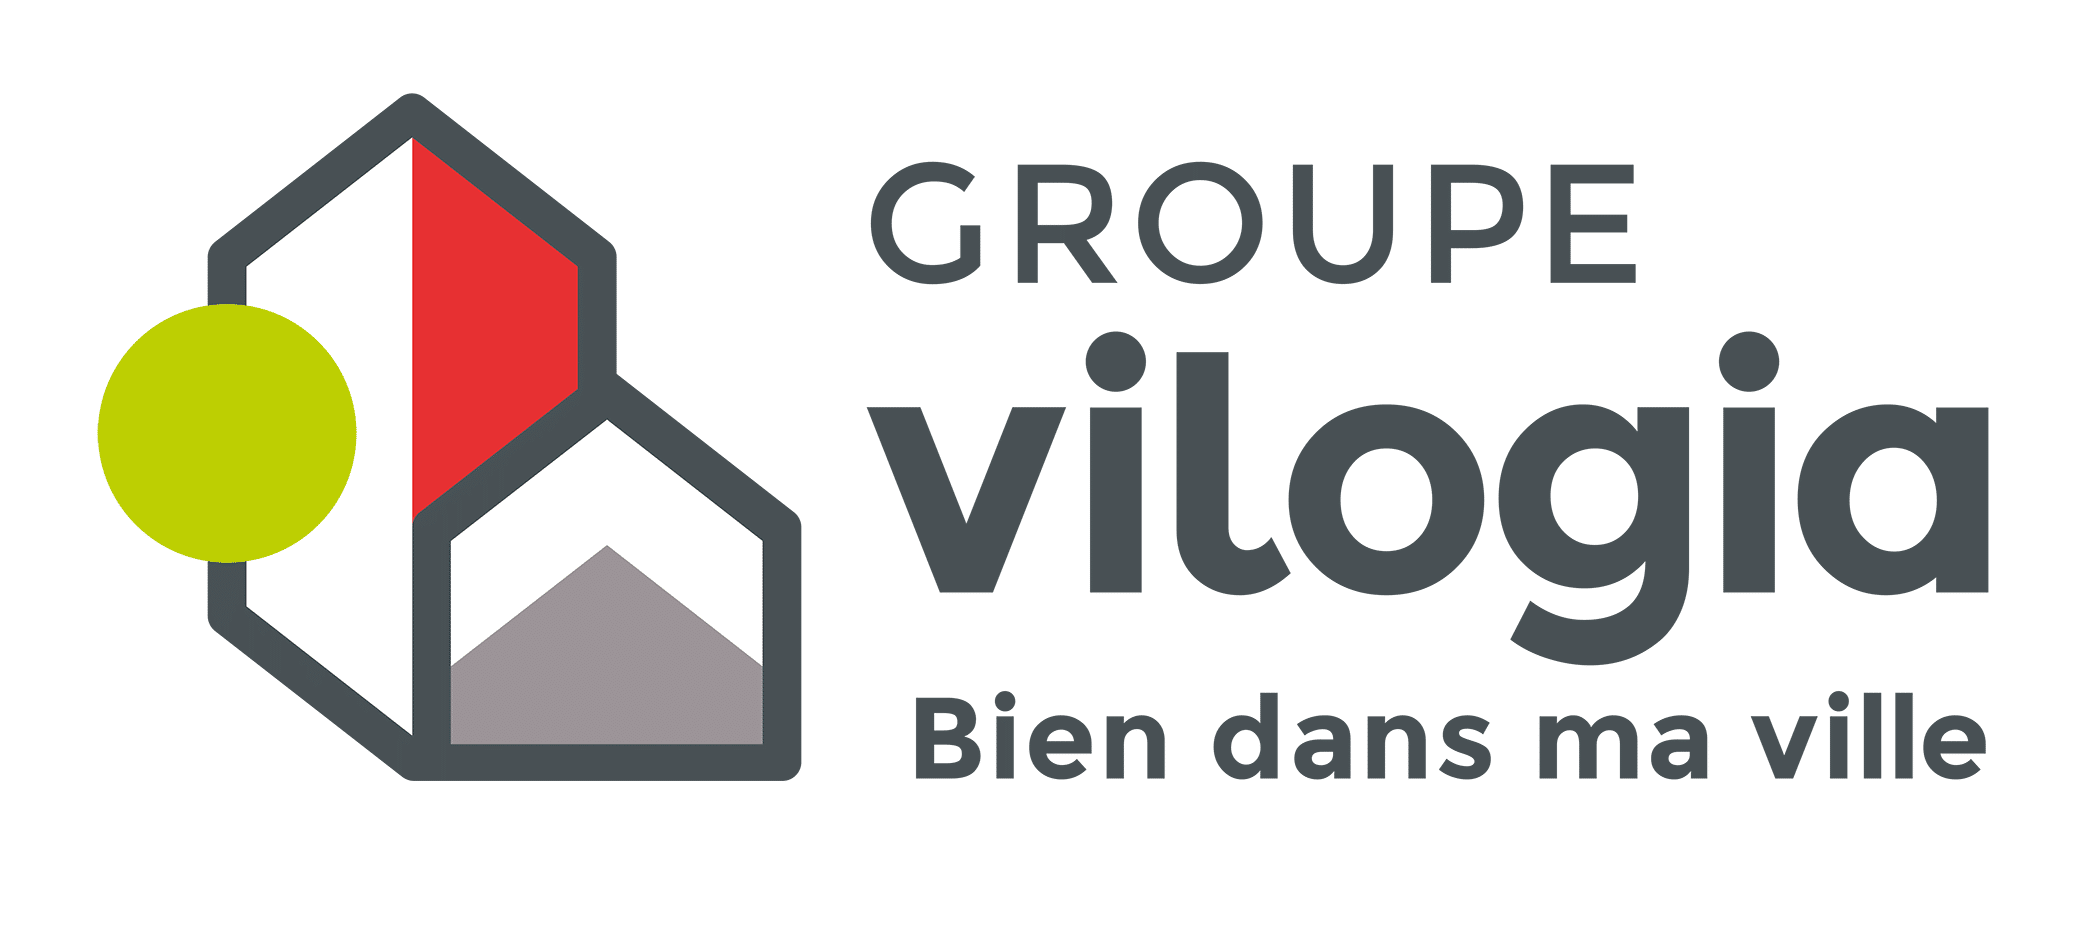 logo vilogia groupe